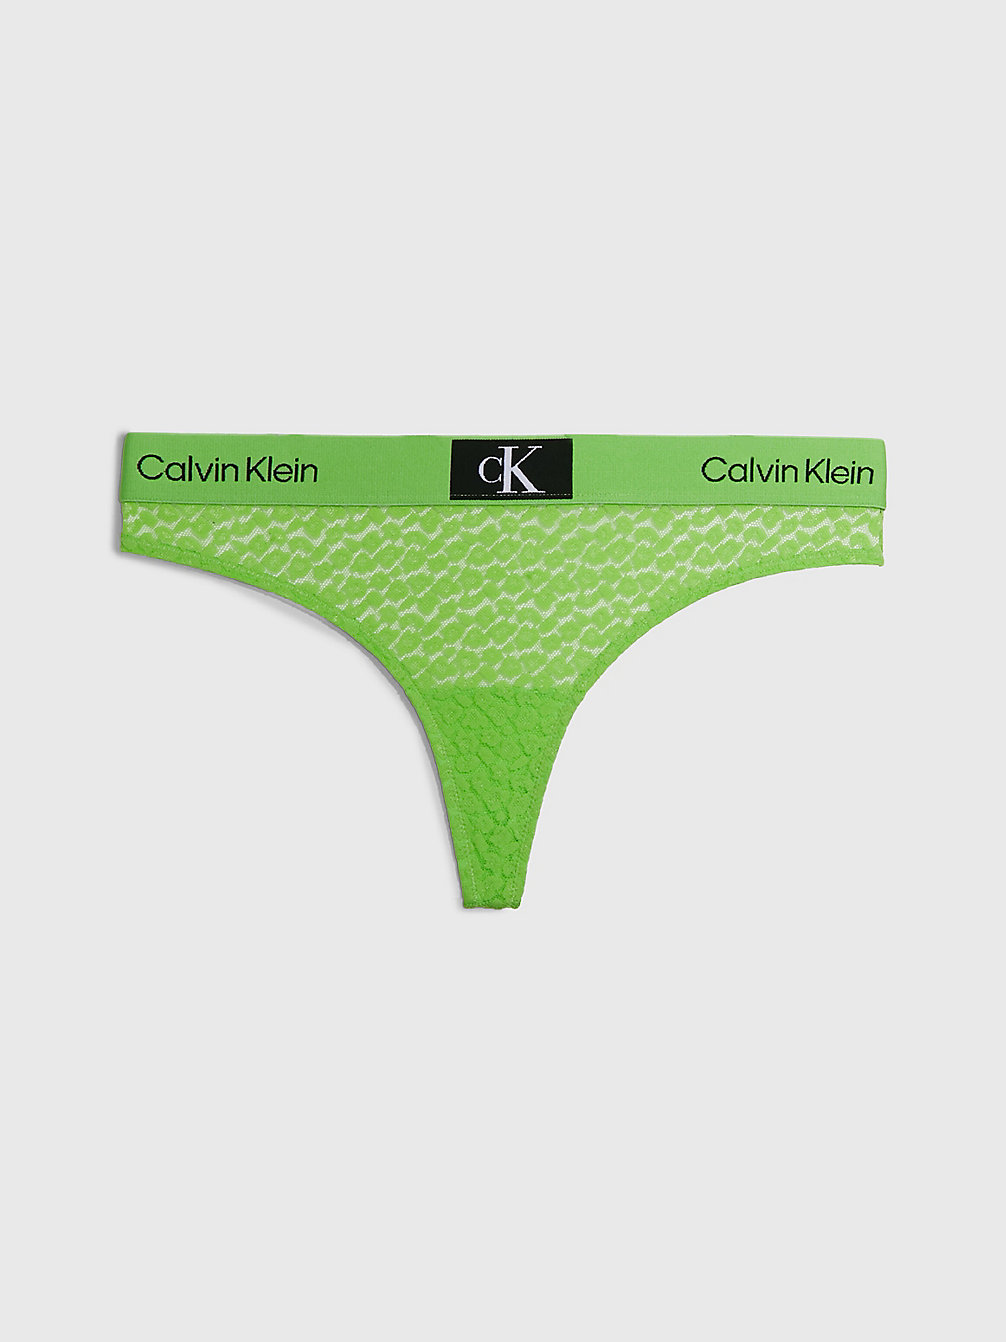 FABULOUS GREEN > String Mit Spitze - Ck96 > undefined Damen - Calvin Klein